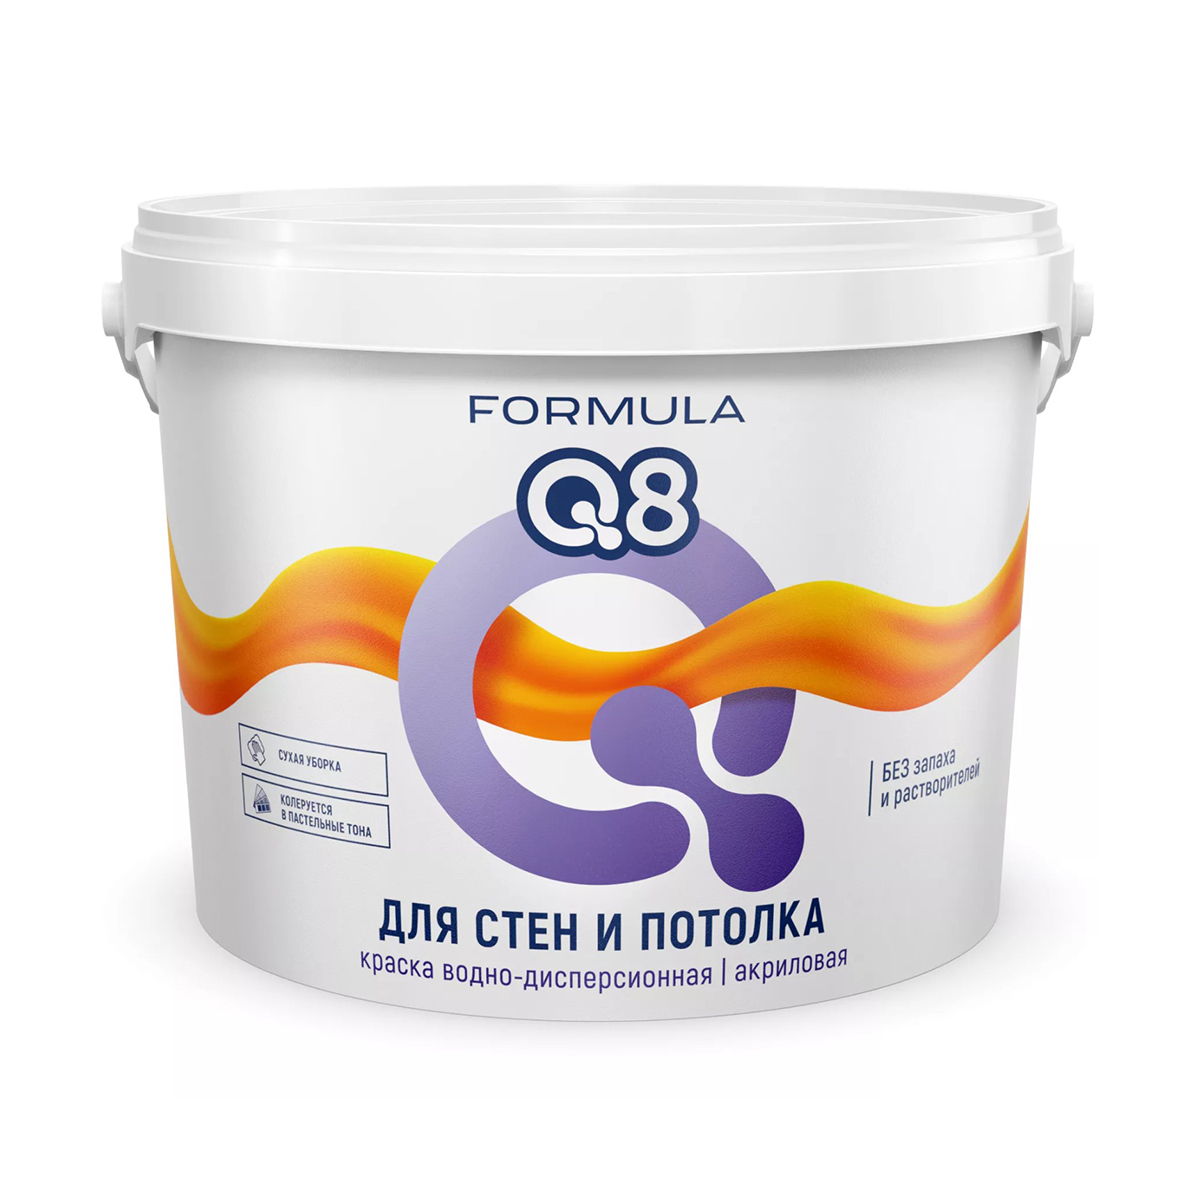 Краска в/д  для стен и потолков "formula q8"  1,5 кг (1/8)